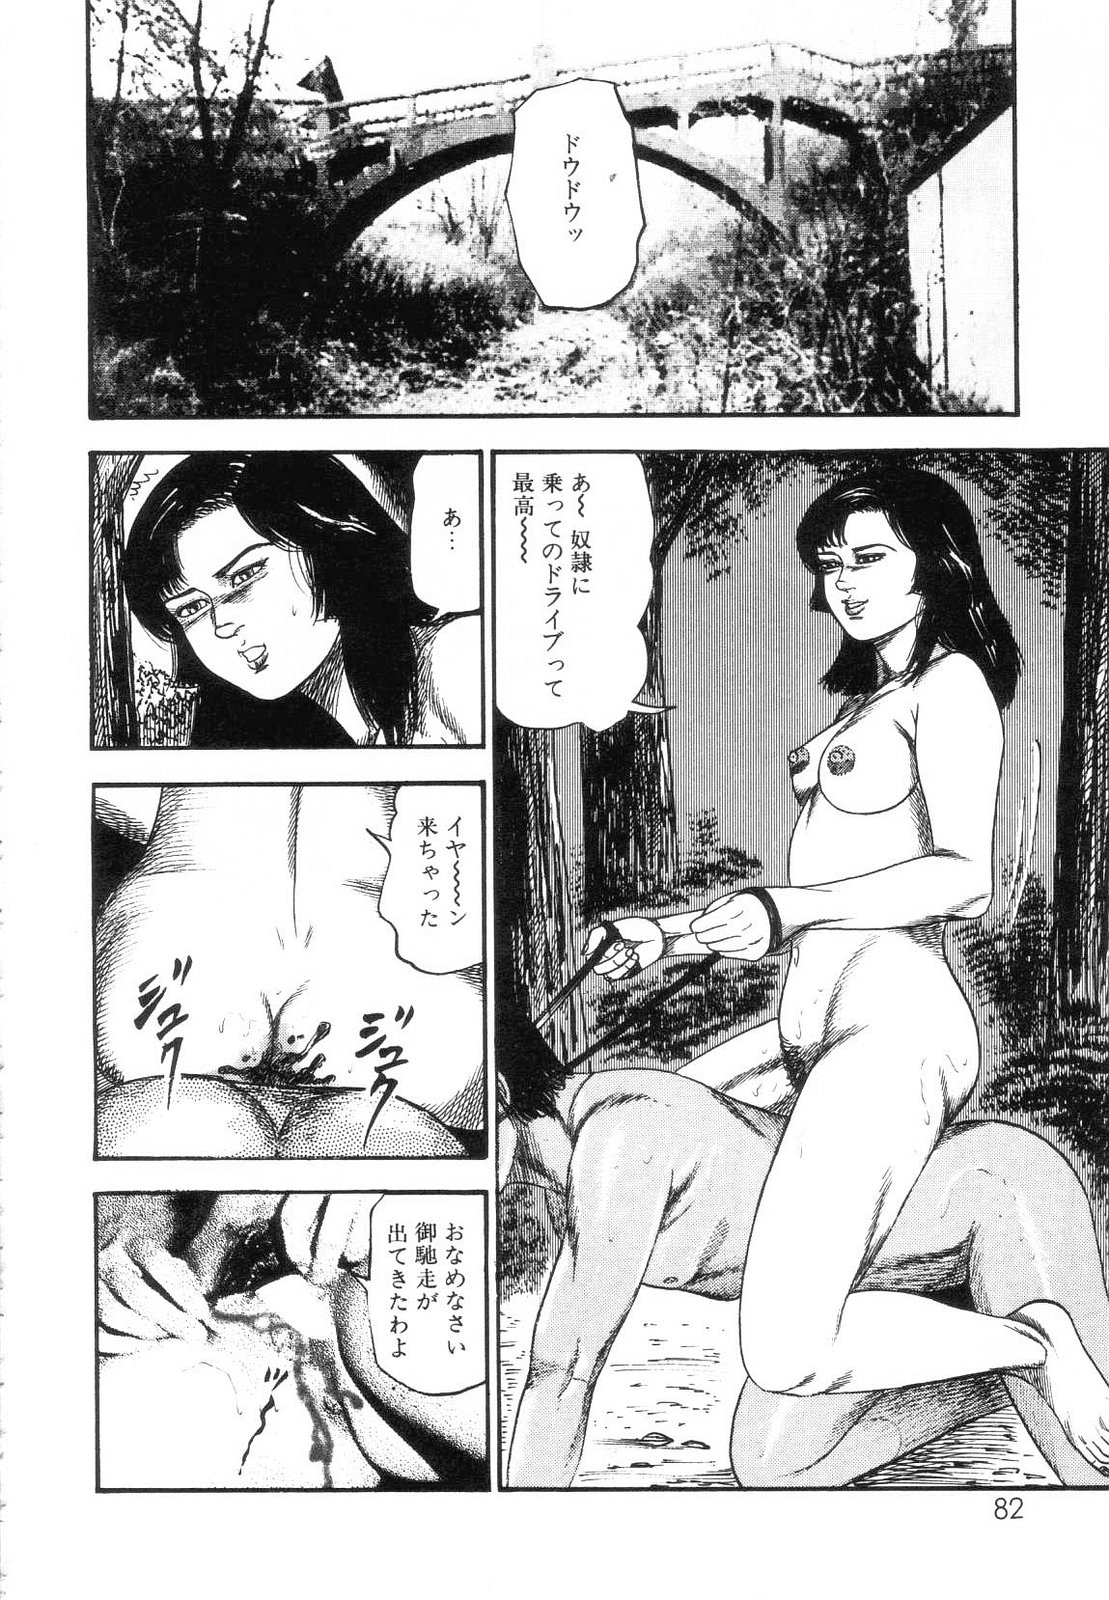 [Sanjou Tomomi] Shiro no Mokushiroku Vol. 7 - Shiiku Ningyou Erika no Shou 83